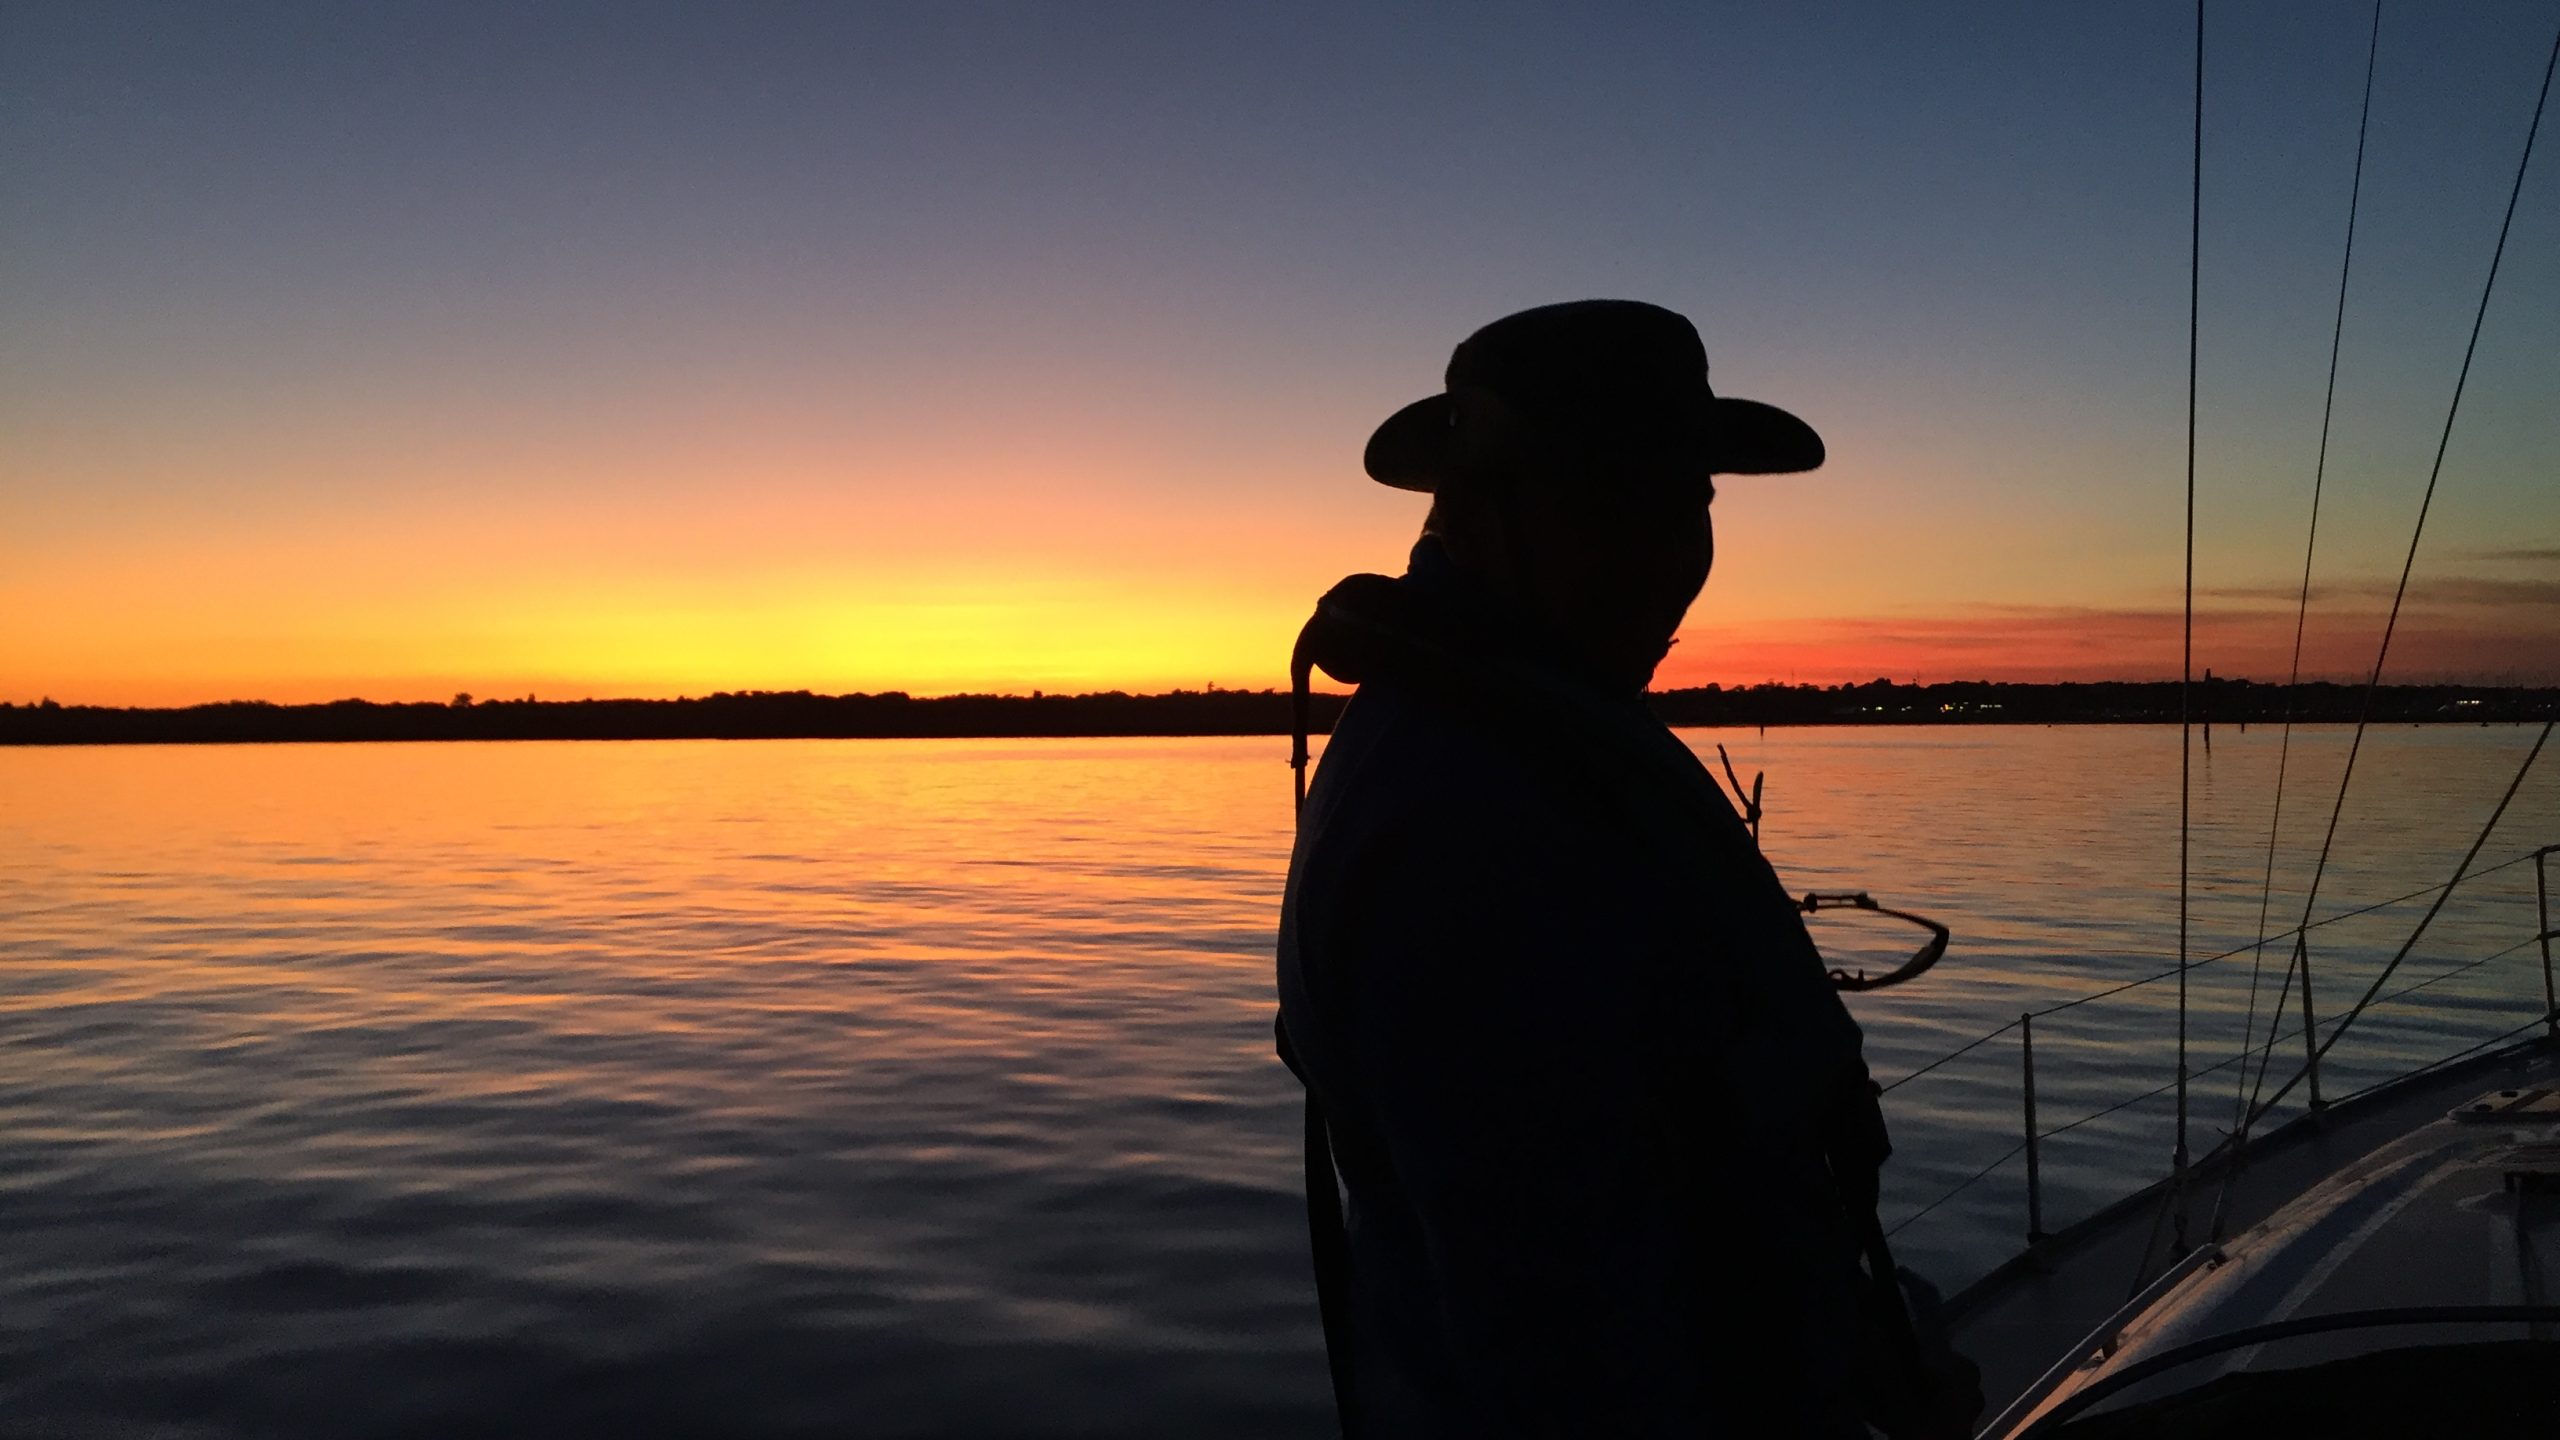 Mandie Cran at sea during sunset